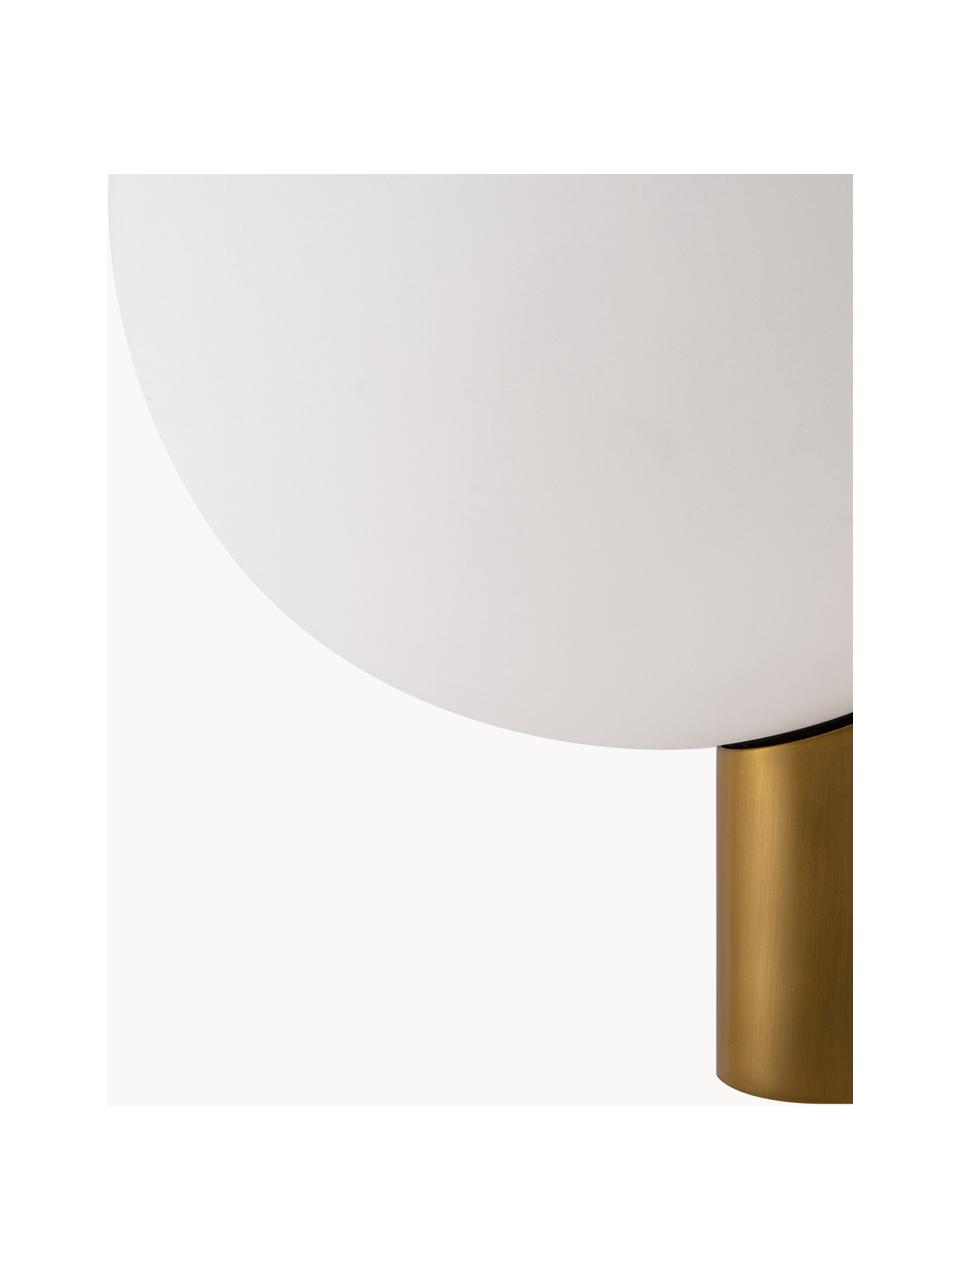 Applique in vetro Avant, Disco diffusore: vetro, Struttura: metallo rivestito, Bianco, dorato, Larg. 18 x Prof. 22 cm